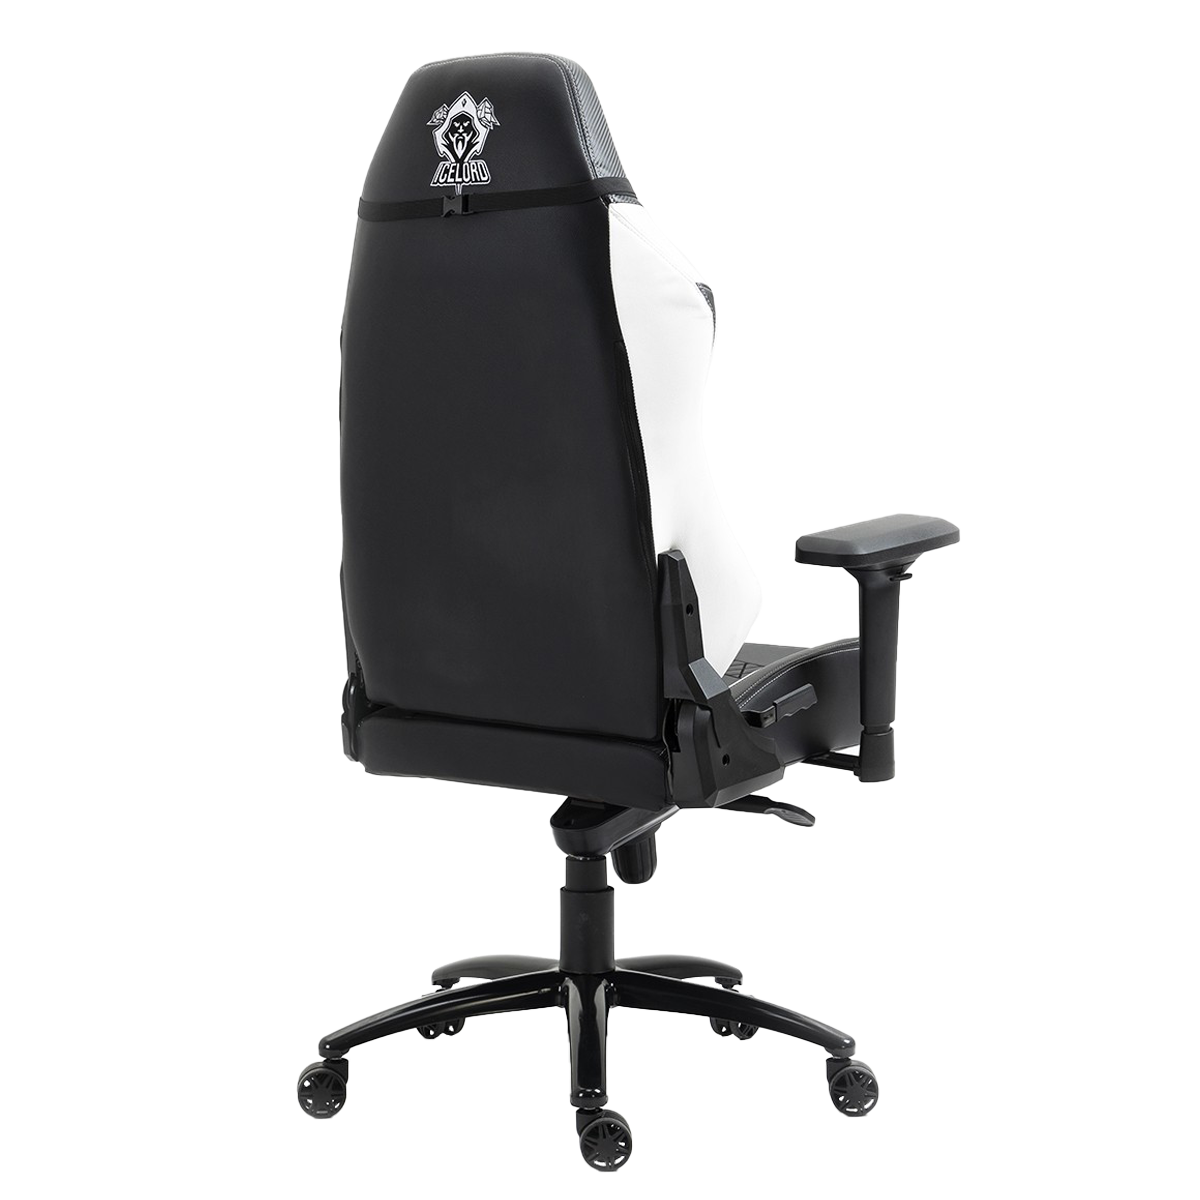 Cadeira Gamer SuperFrame Icelord, Reclinável, 4D, Suporta até 180KG, Preto e Branco, SFCD-CLBK/WH